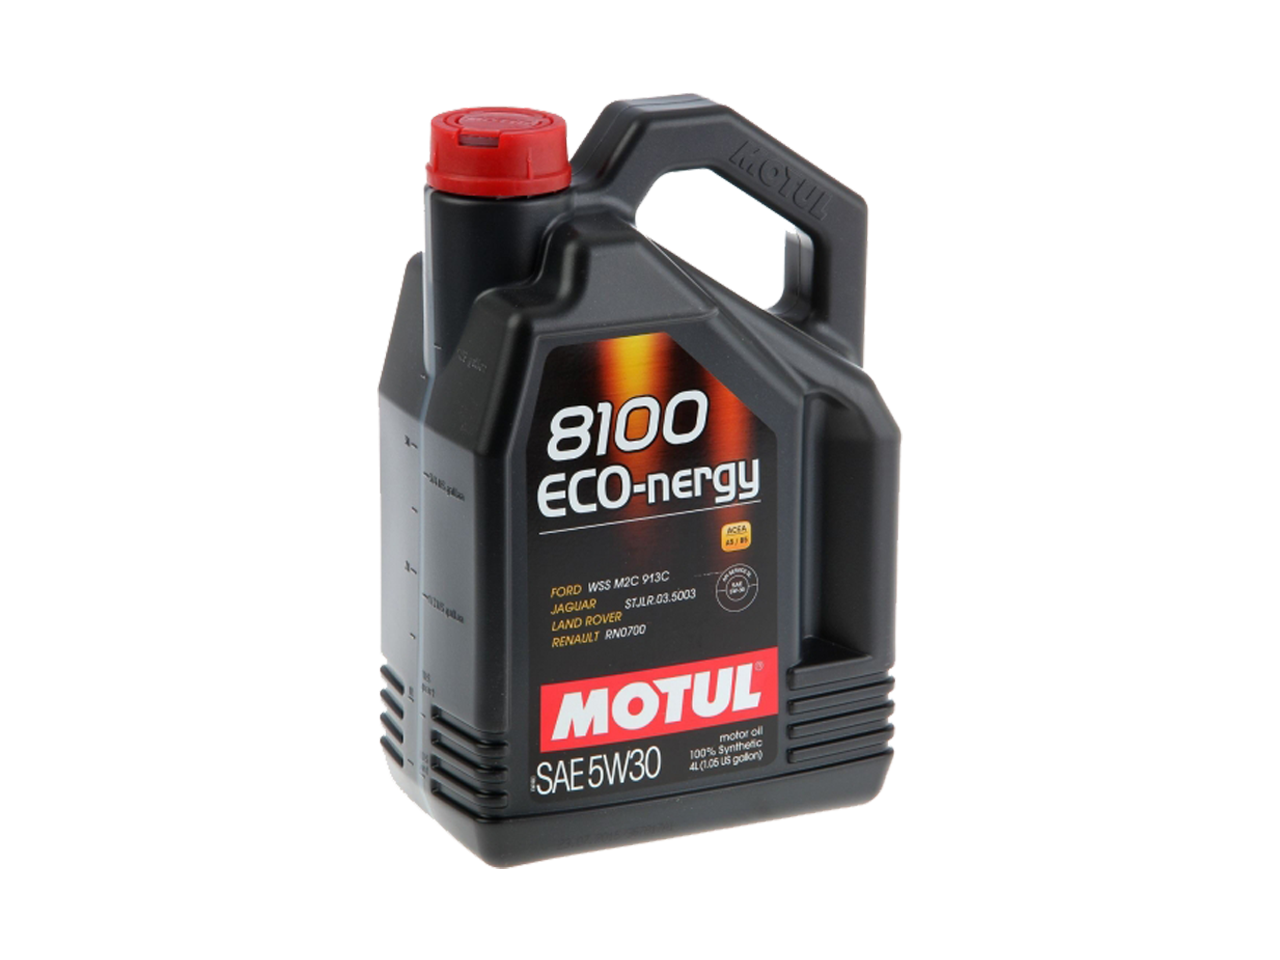 Купить недорого Моторное масло Motul 8100 ECO-nergy в Москве